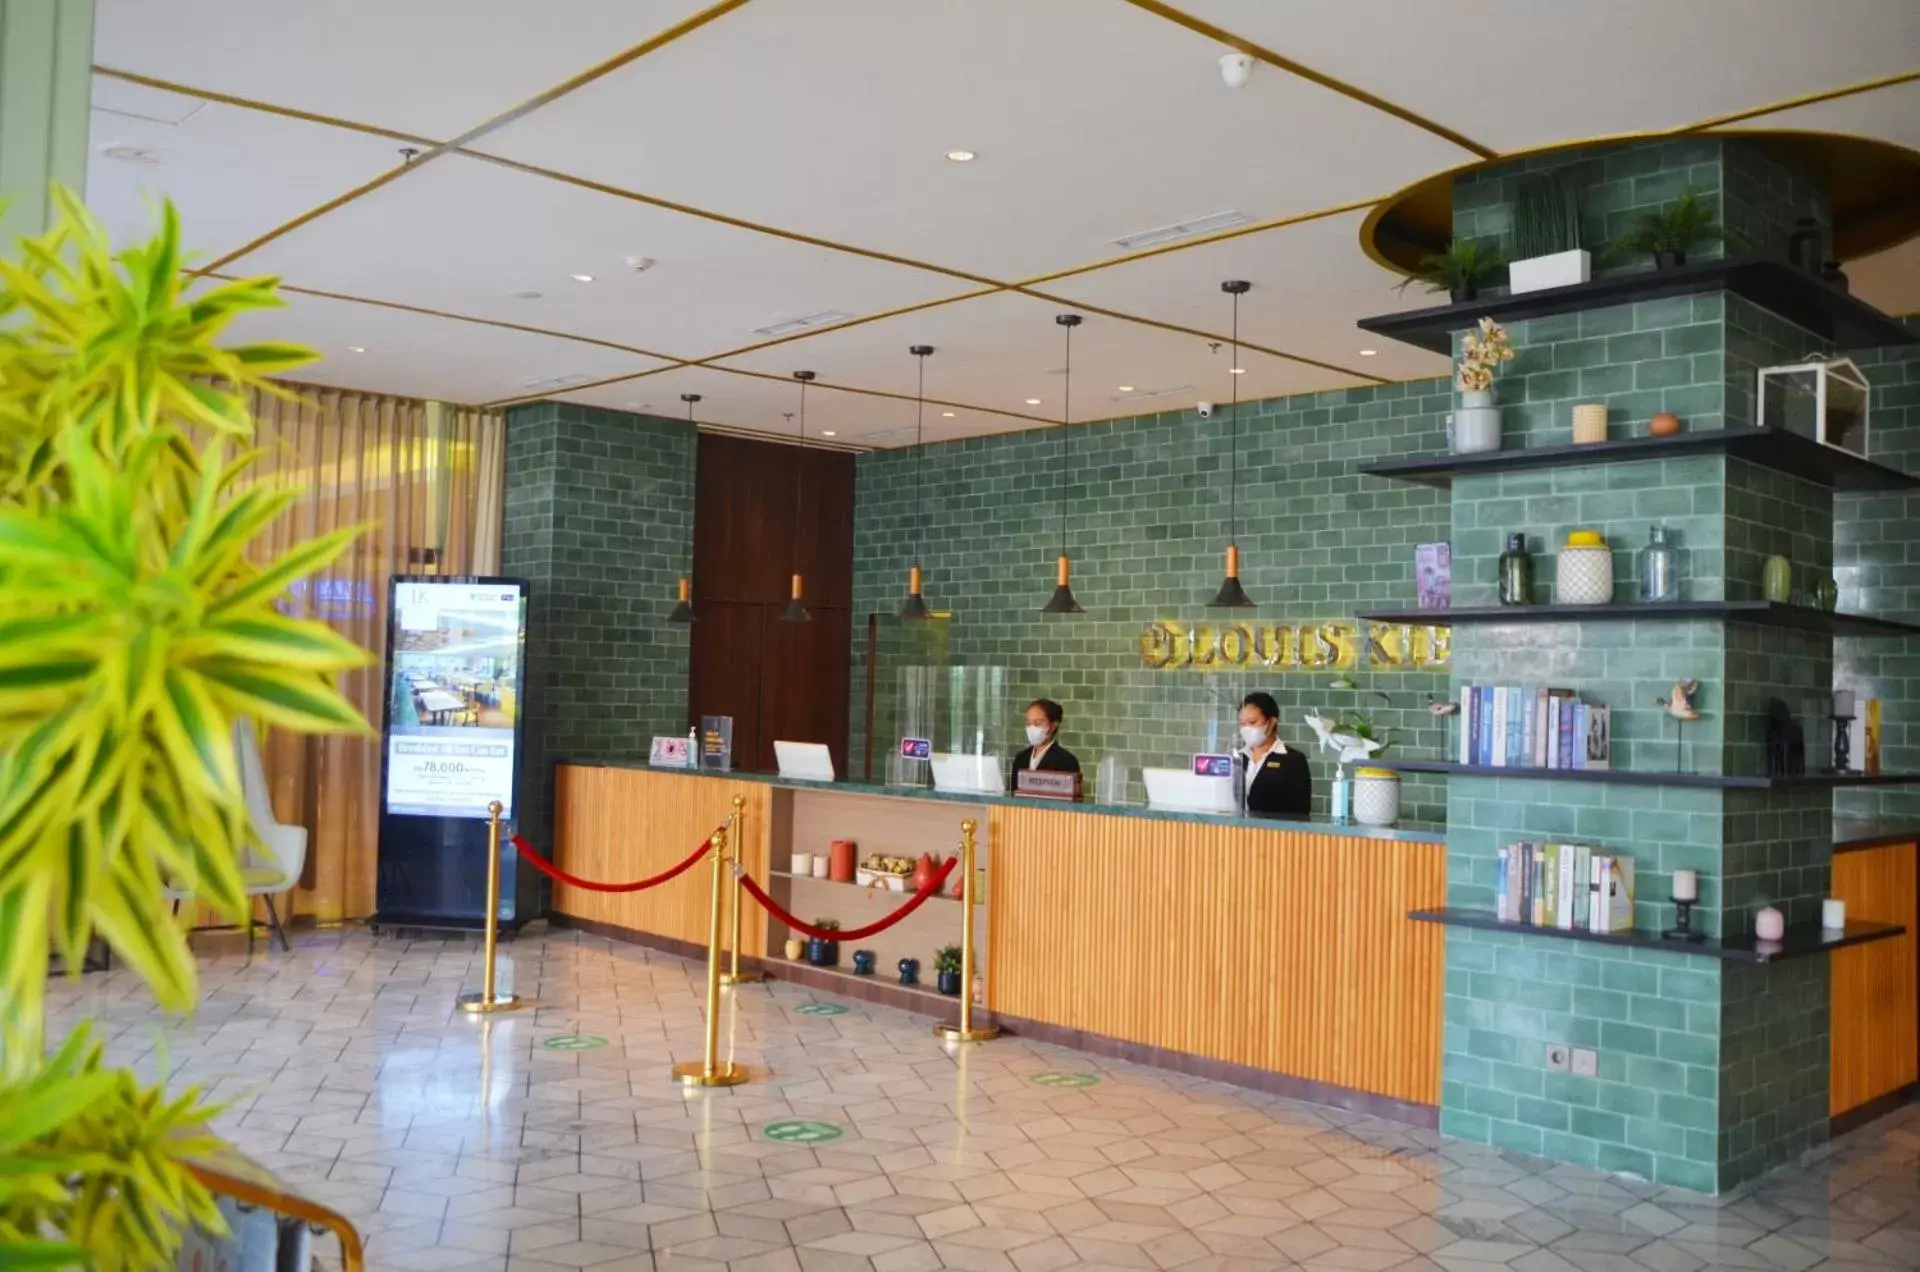 Lobby or reception, Lobby/Reception in Louis Kienne Hotel Pemuda